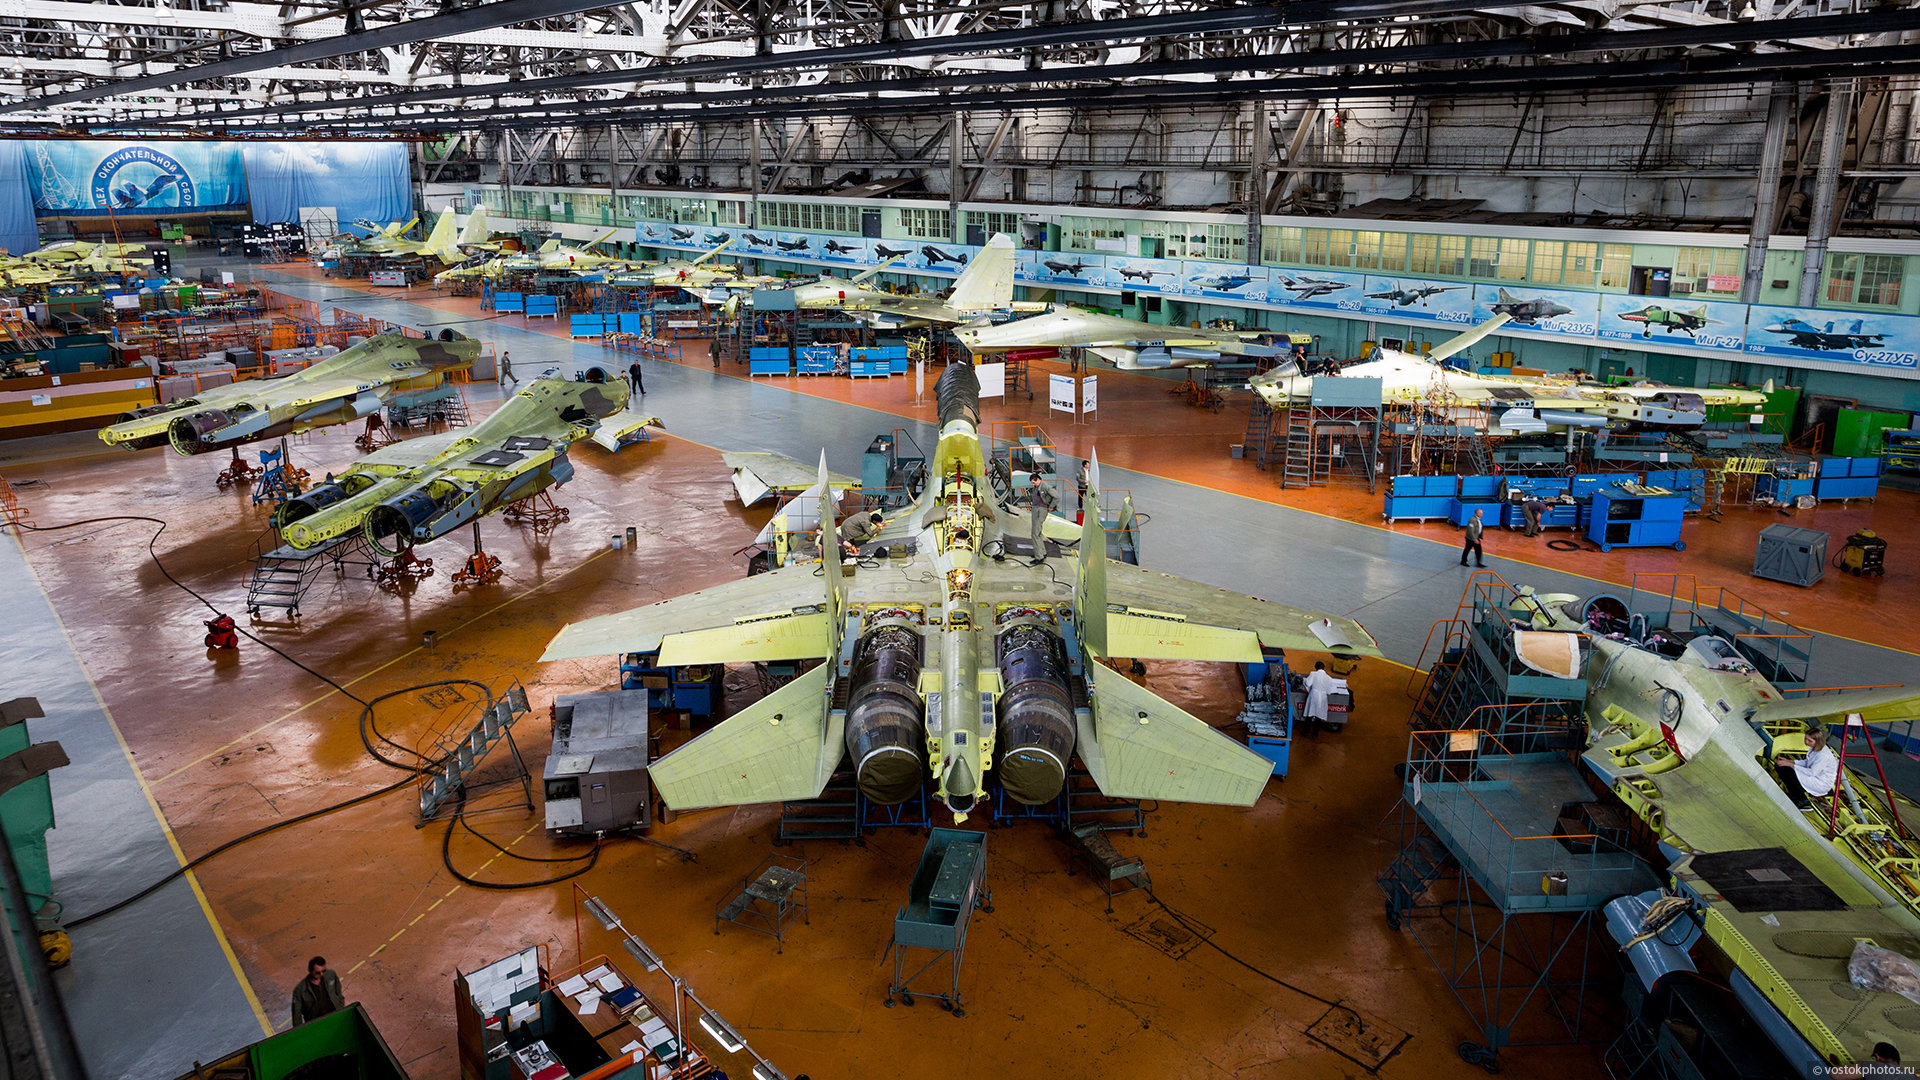 伊尔库茨克航空工厂是俄罗斯重要的军工厂之一,该工厂曾生产苏27战斗